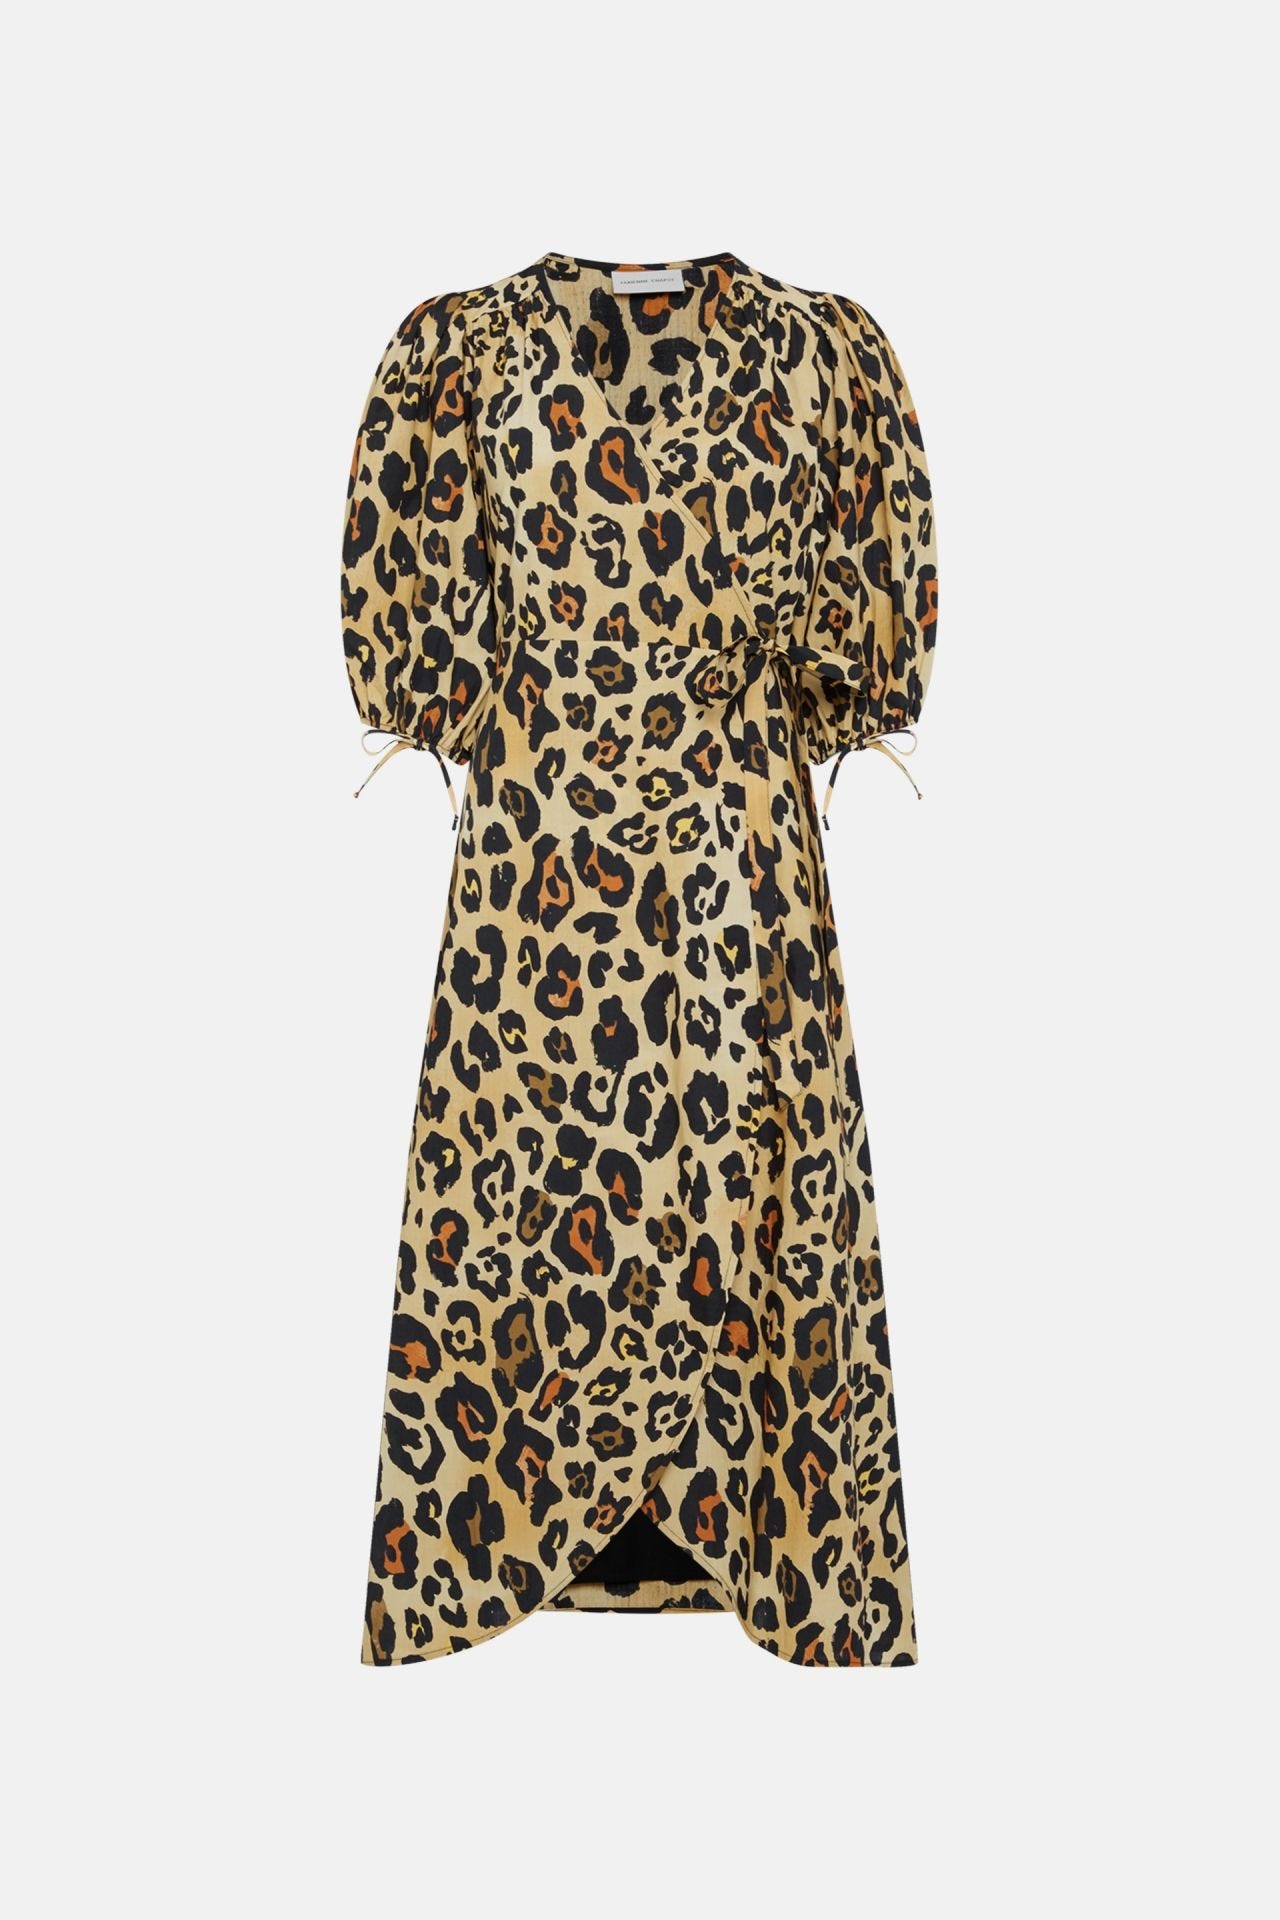 Fabienne Chapot Leopard Wrap Dress